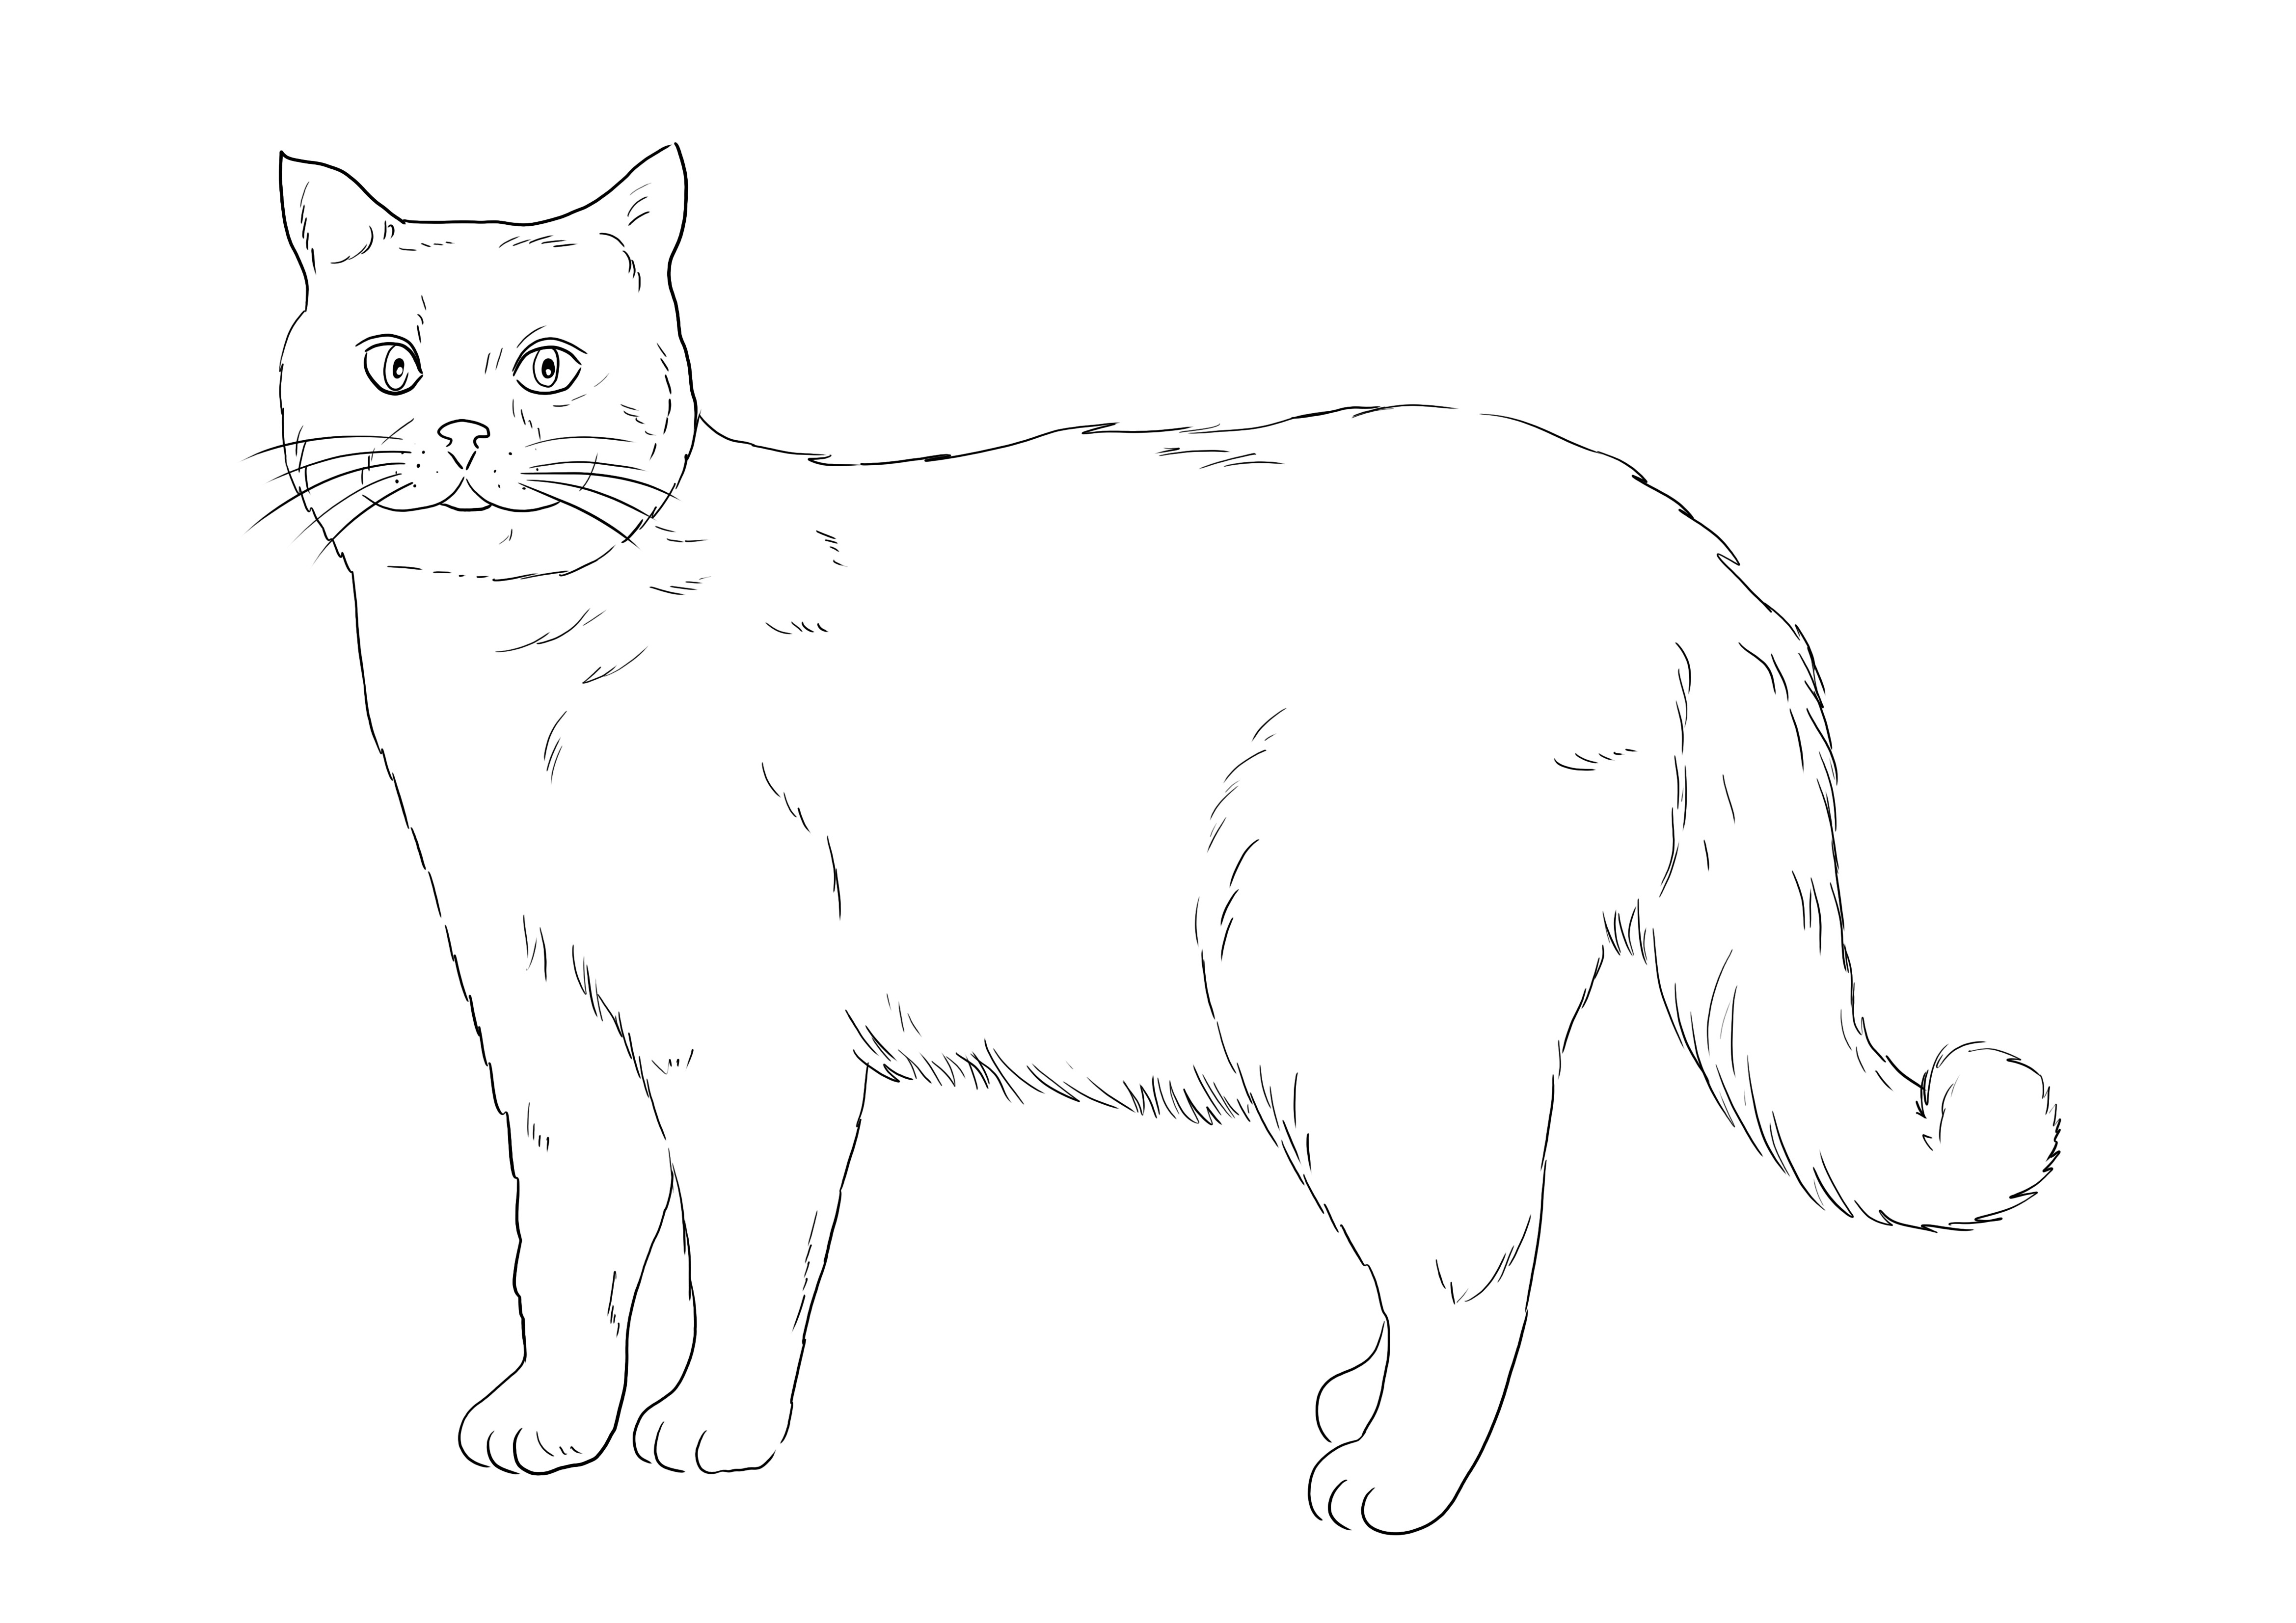 Grátis para colorir do British Shorthair Cat para imprimir ou guardar para mais tarde e colorir